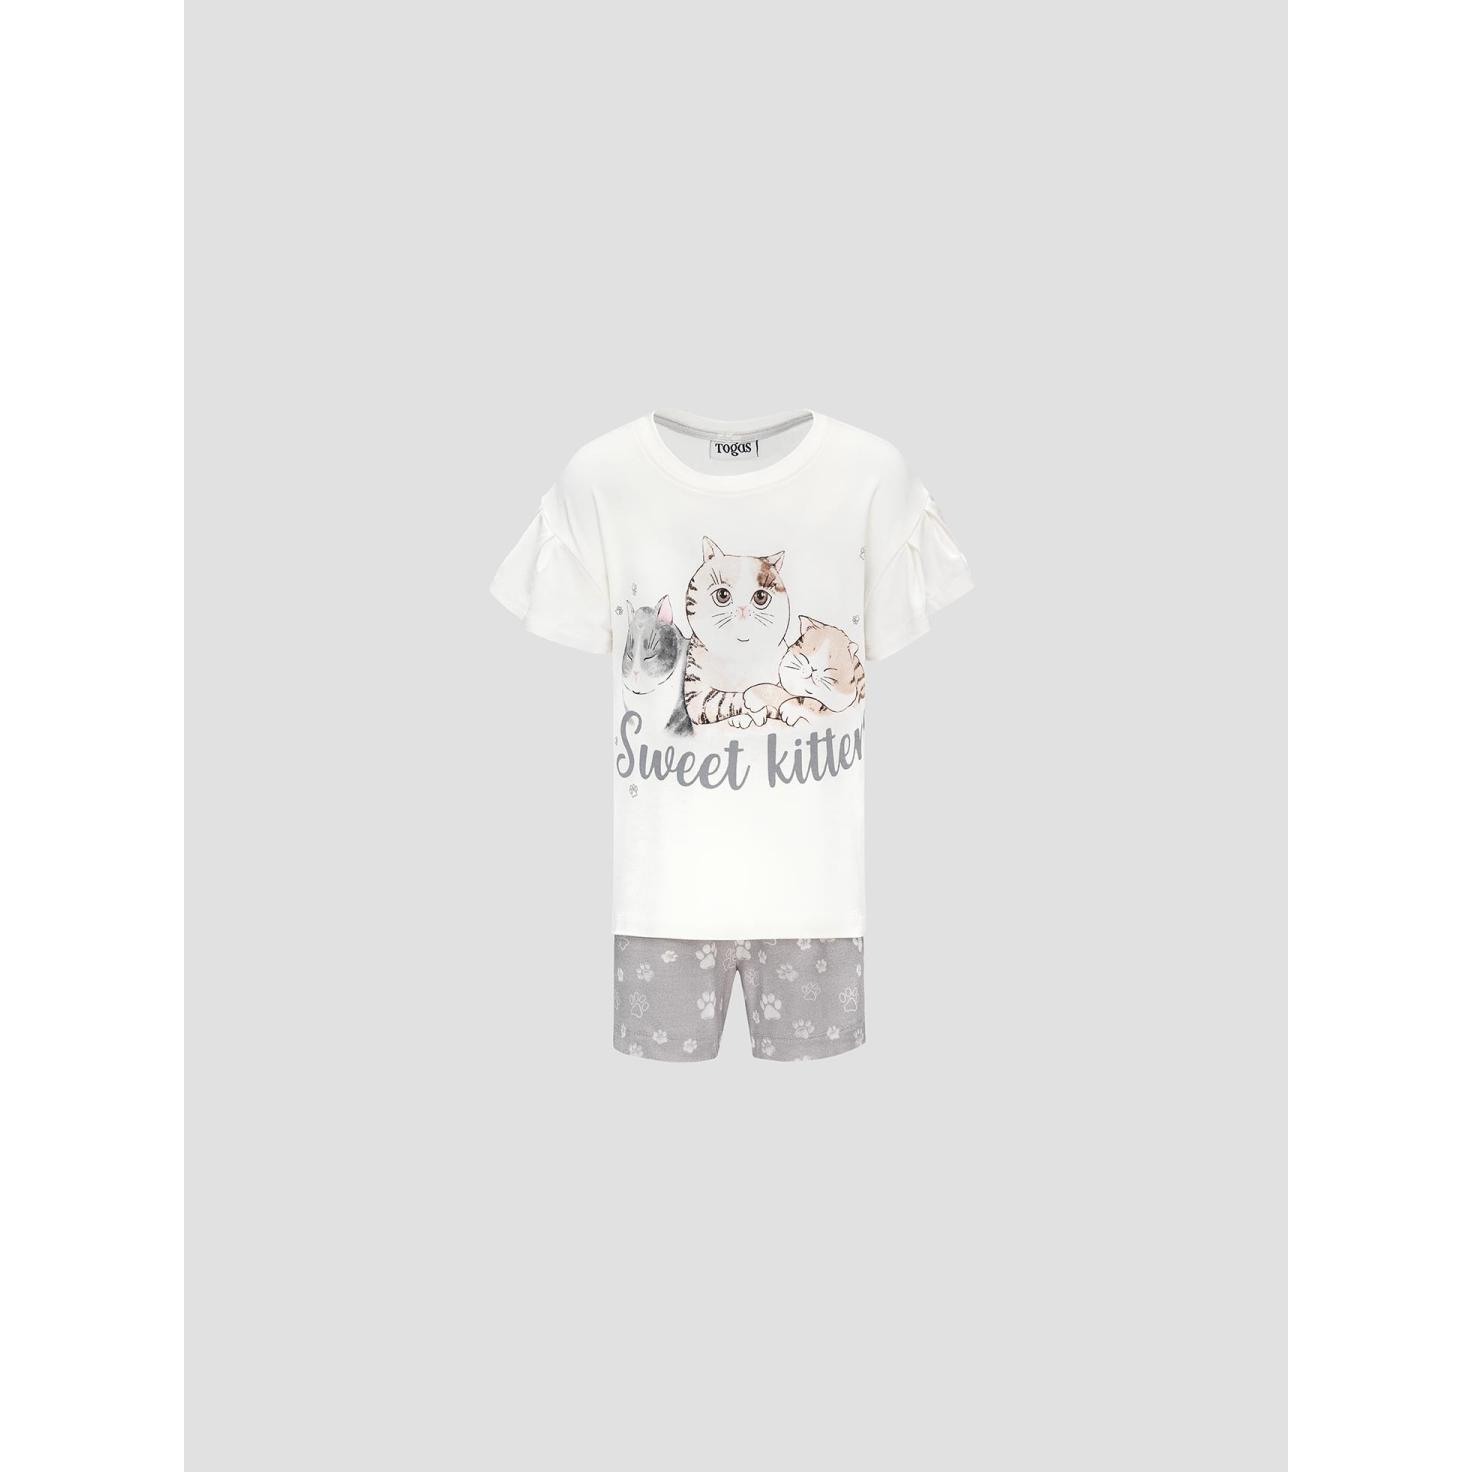 Пижама для девочек Kids by togas Китти бело-серая 128-134 см